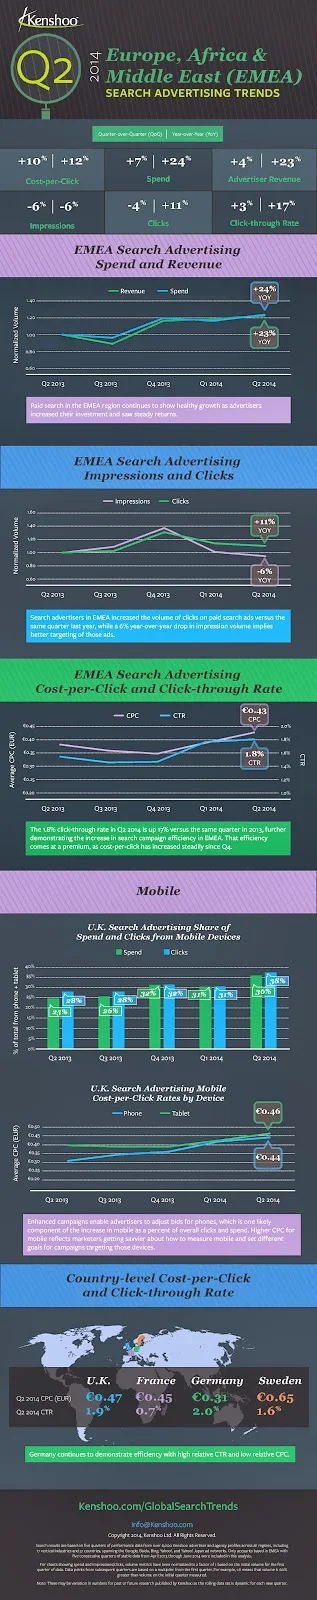 Mobile Search Ad Trends 2014 EMEA